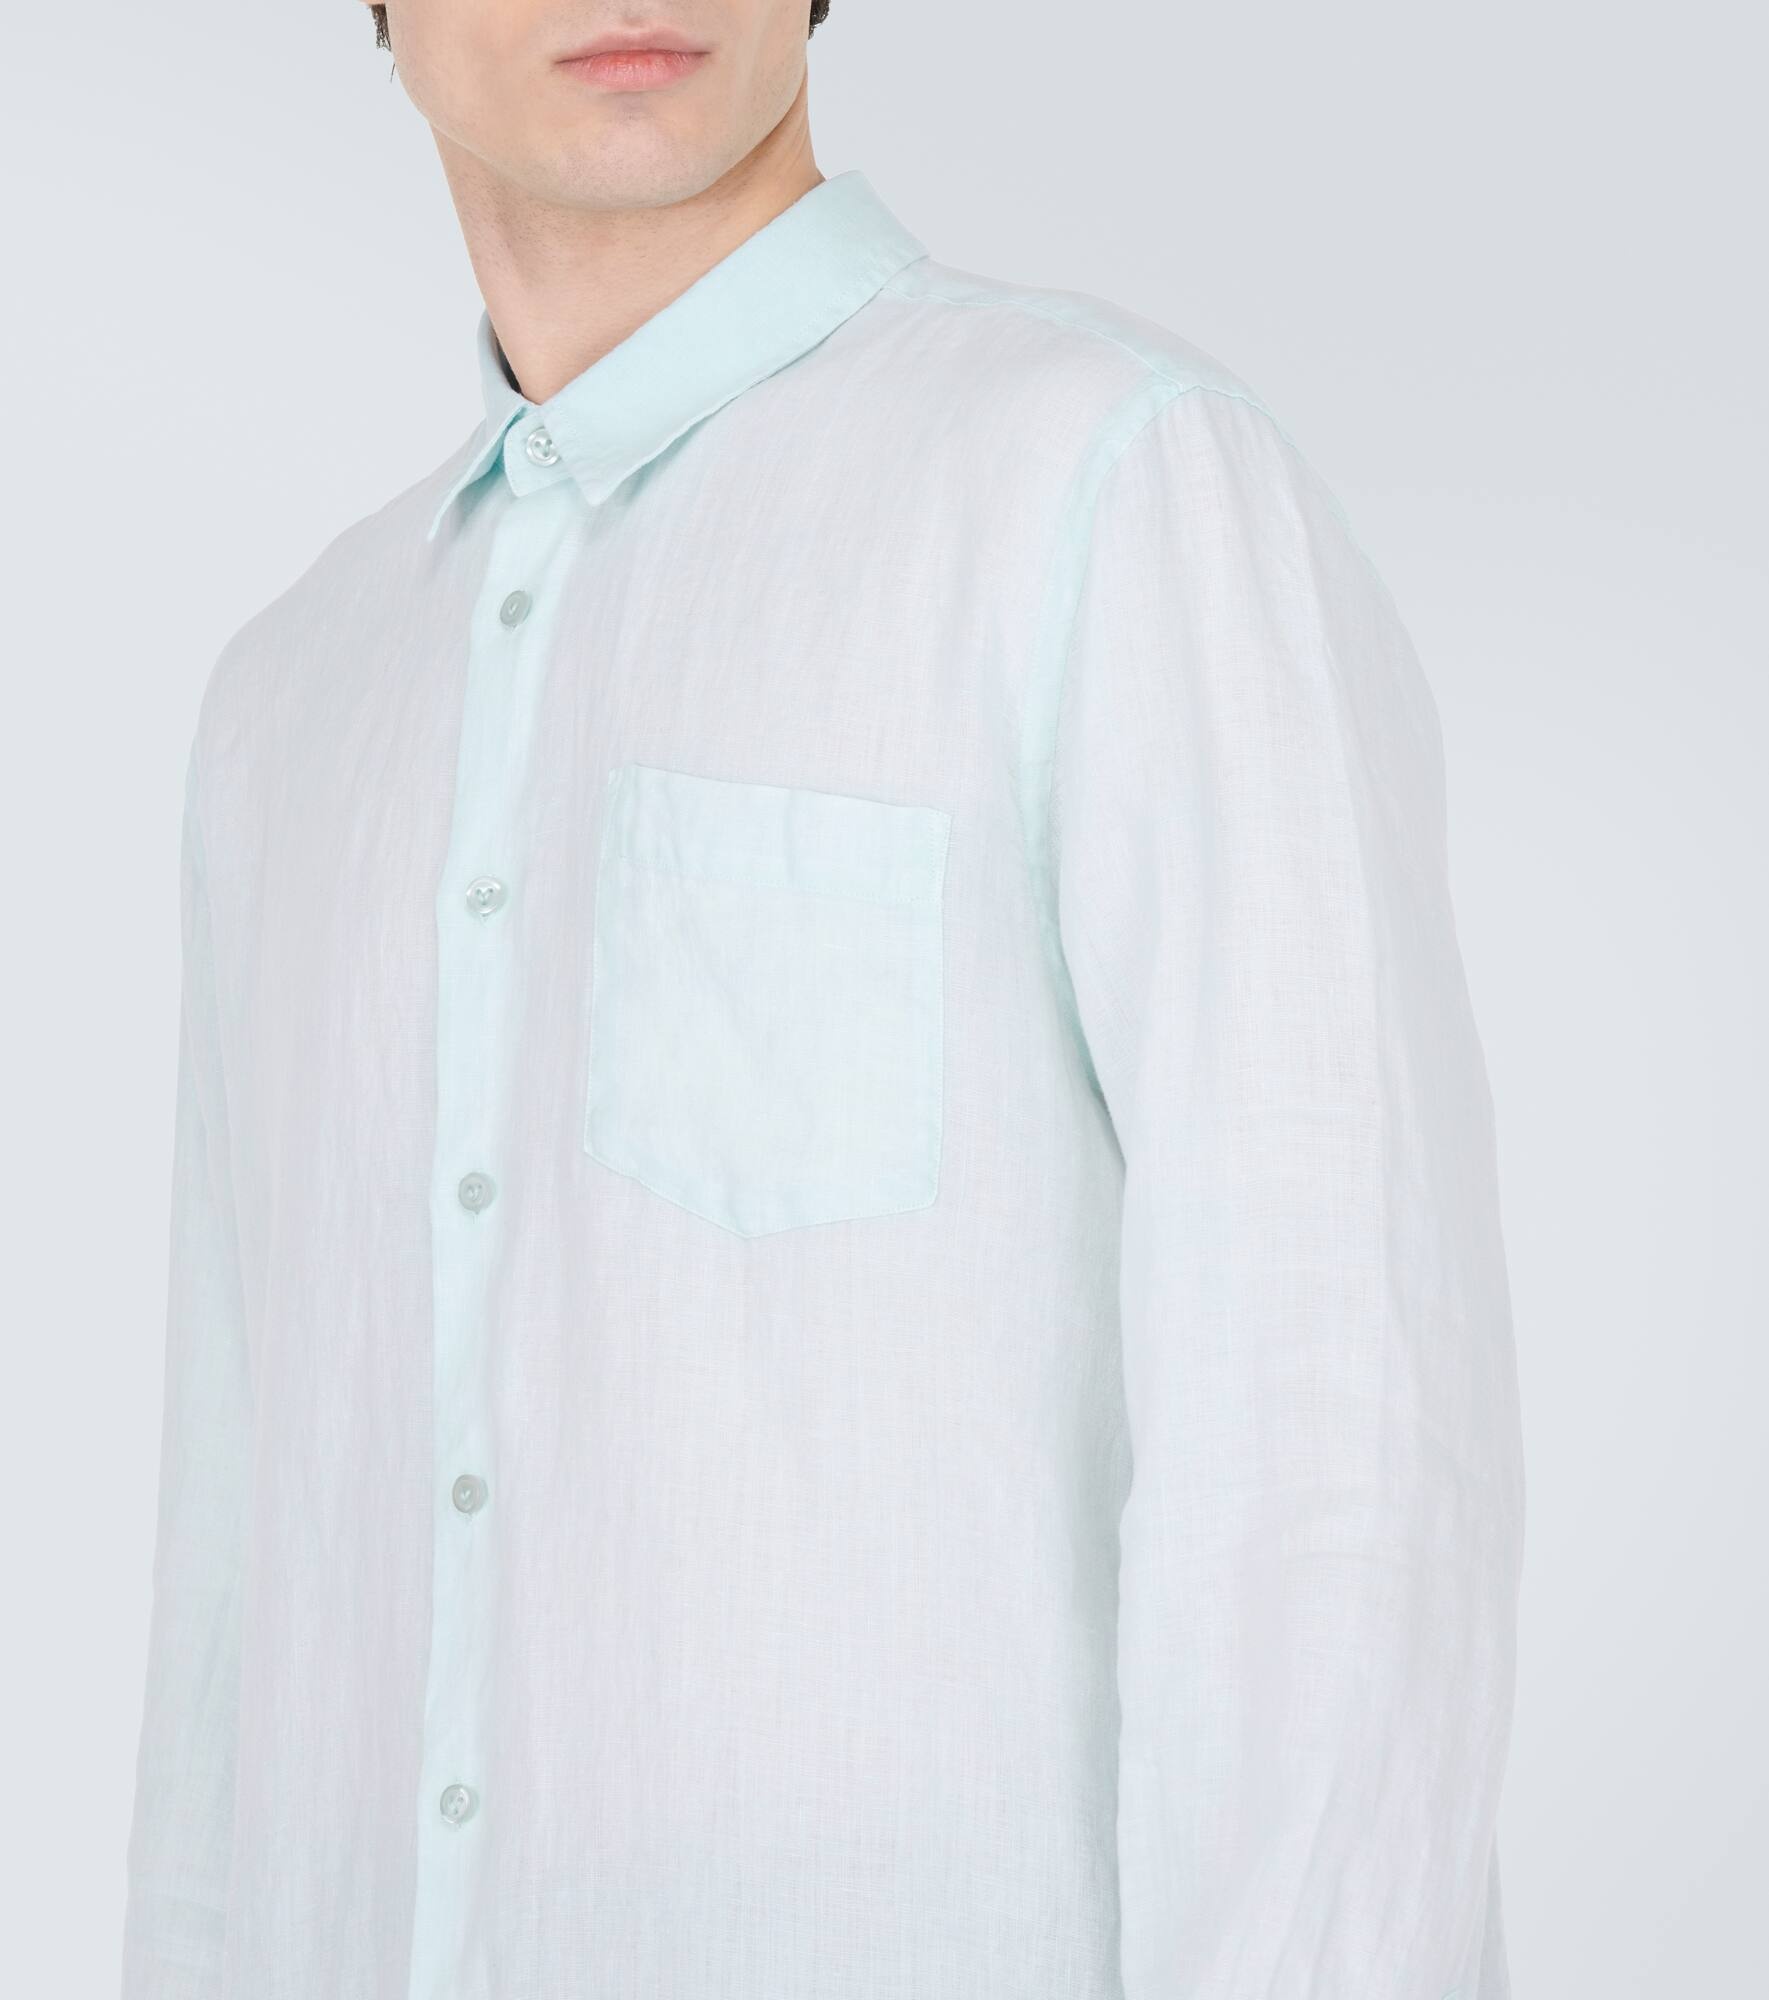 Caroubis linen shirt - 5